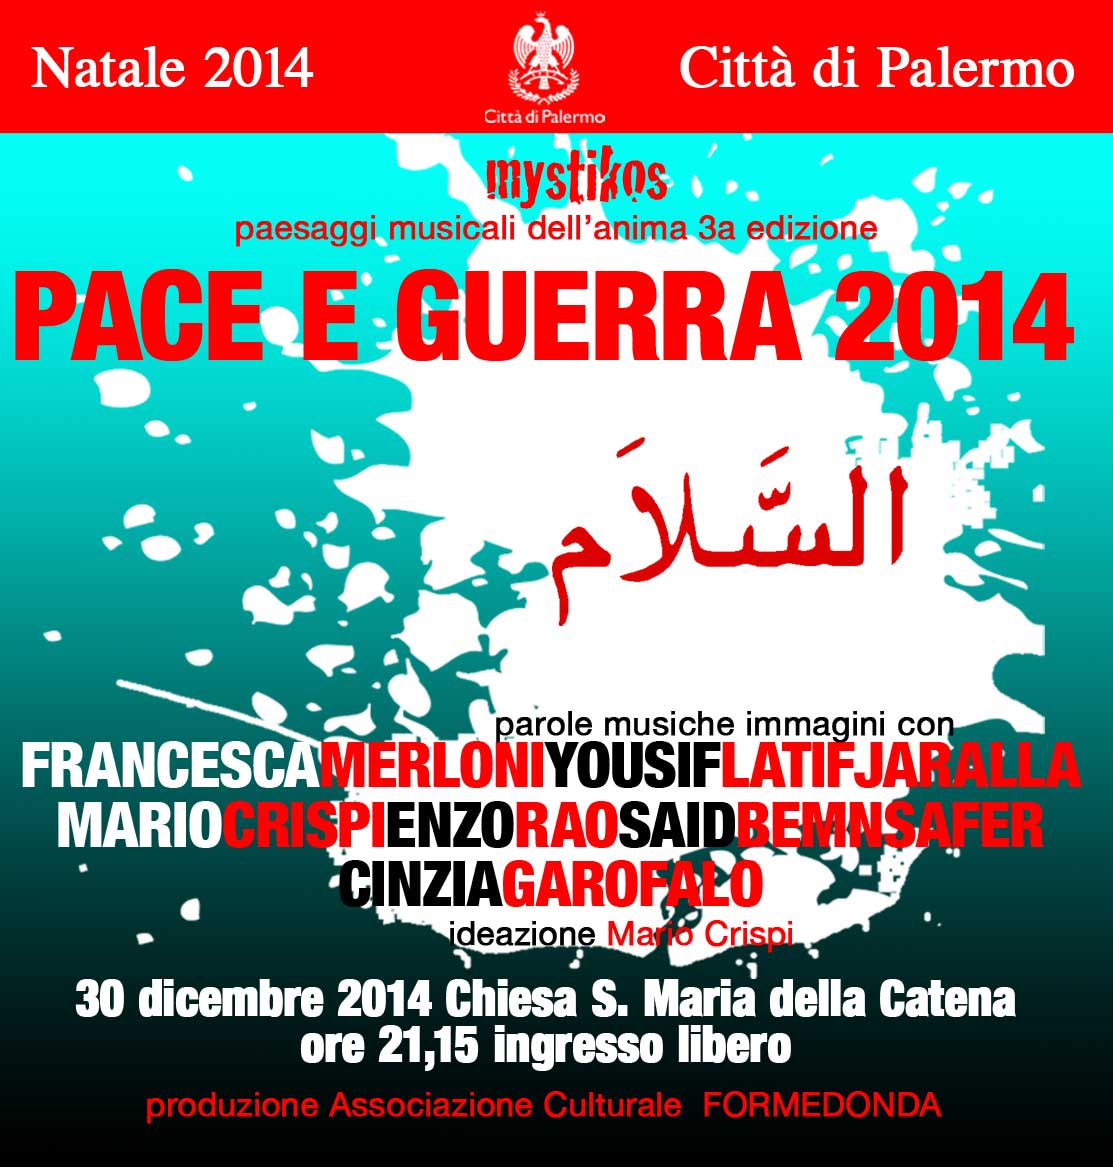 Natale a Palermo 2014: progetto Mystikos – Terza edizione